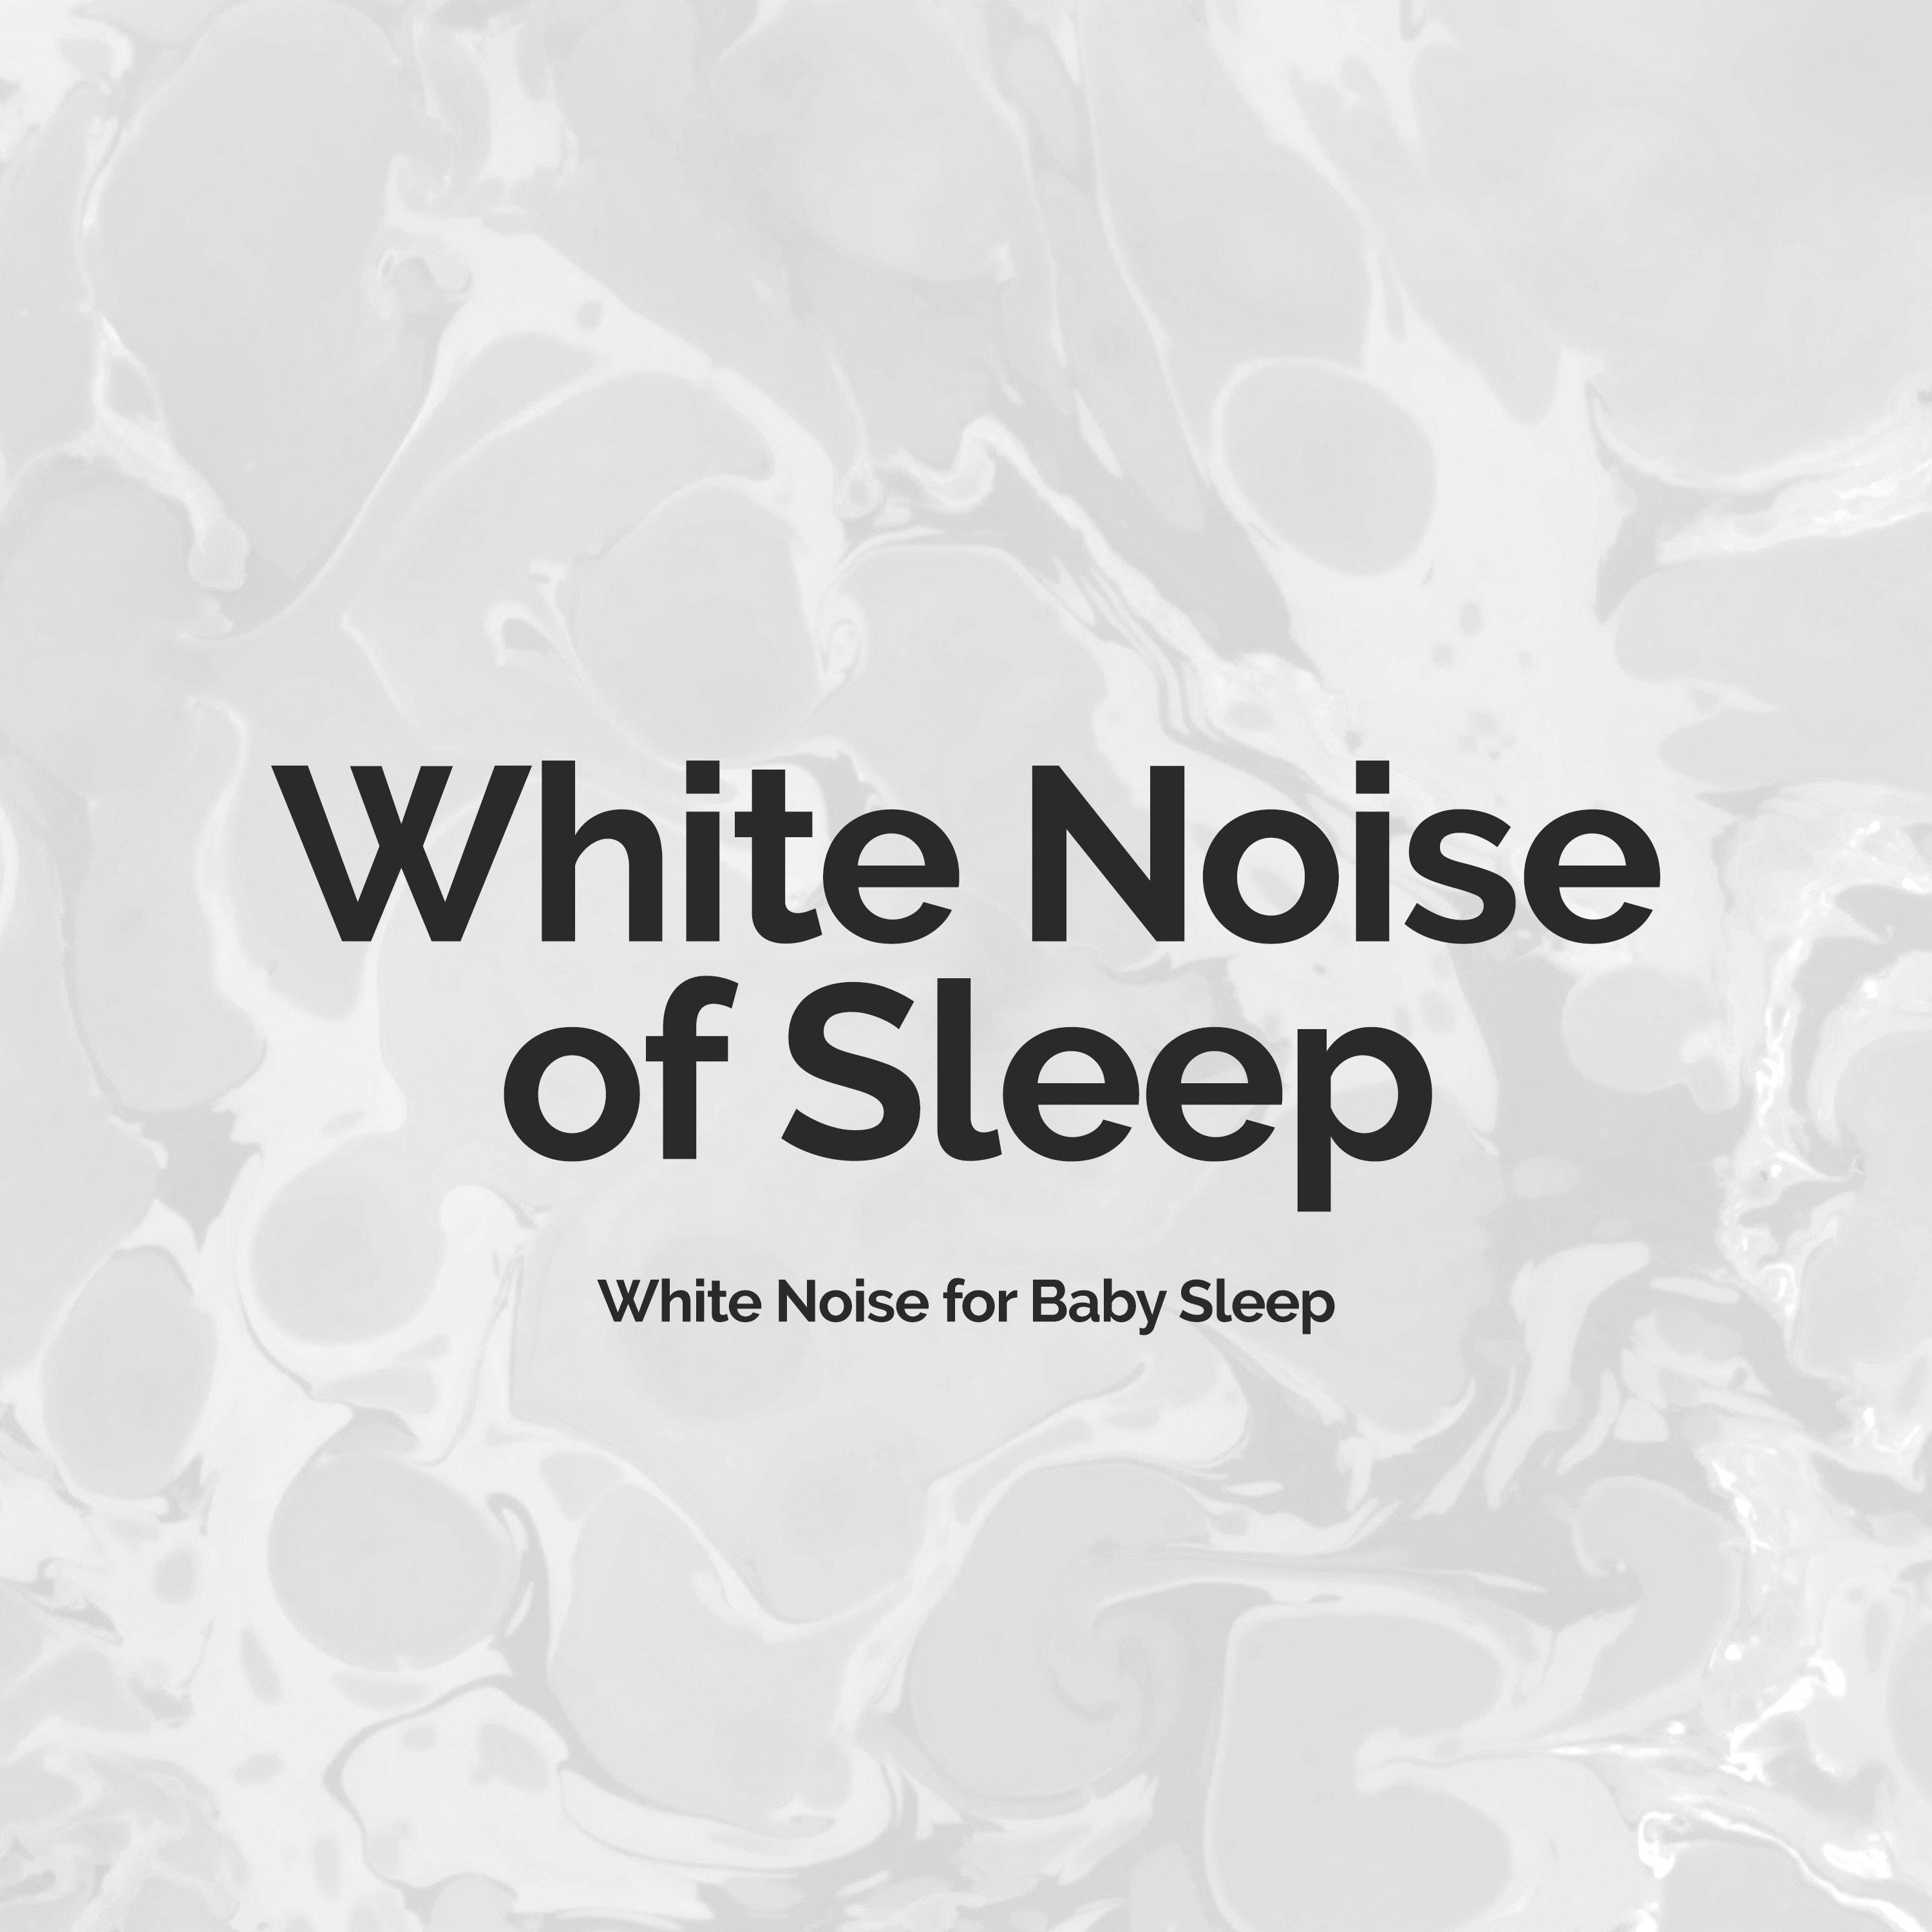 White Noise of Sleep